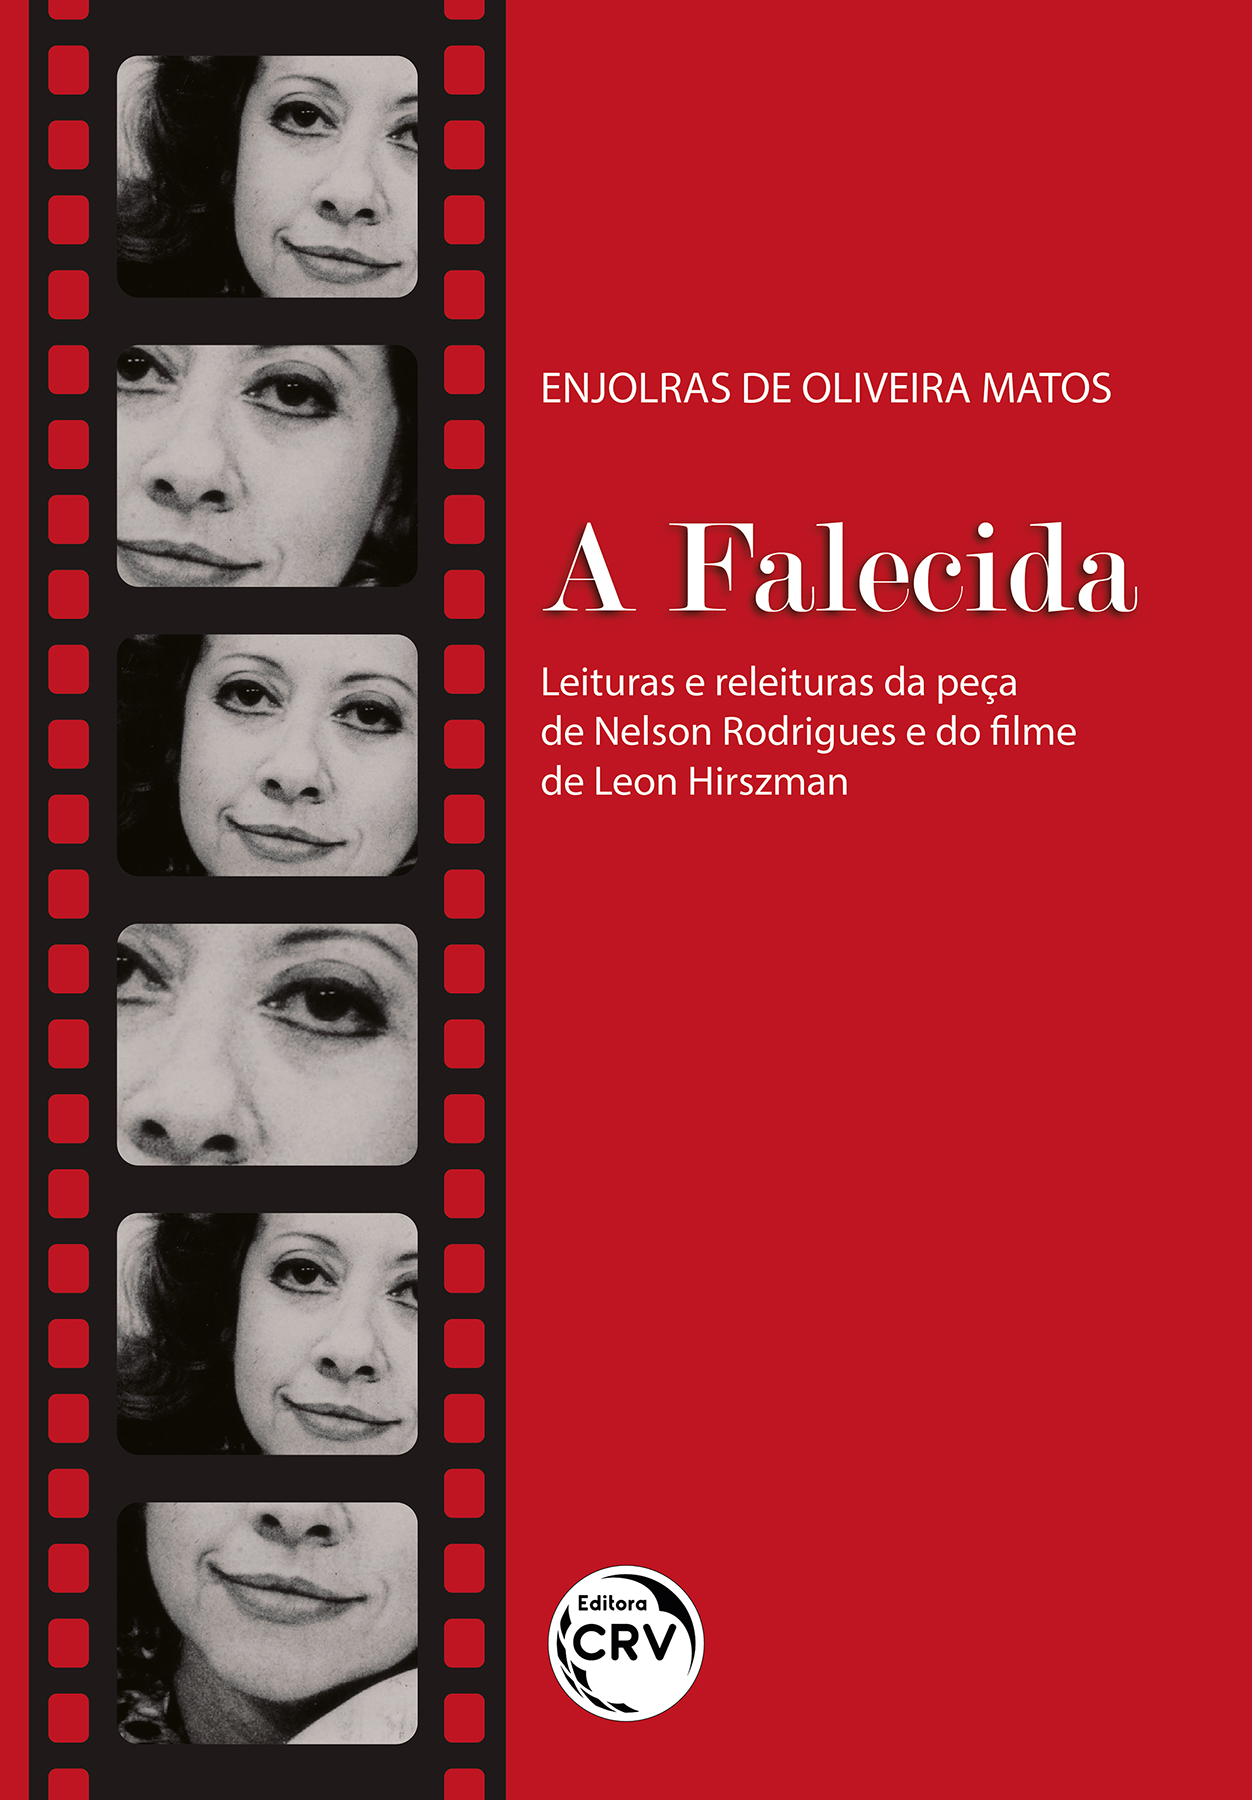 Capa do livro: A FALECIDA<br>leituras e releituras da peça de Nelson Rodrigues e do filme de Leon Hirszman